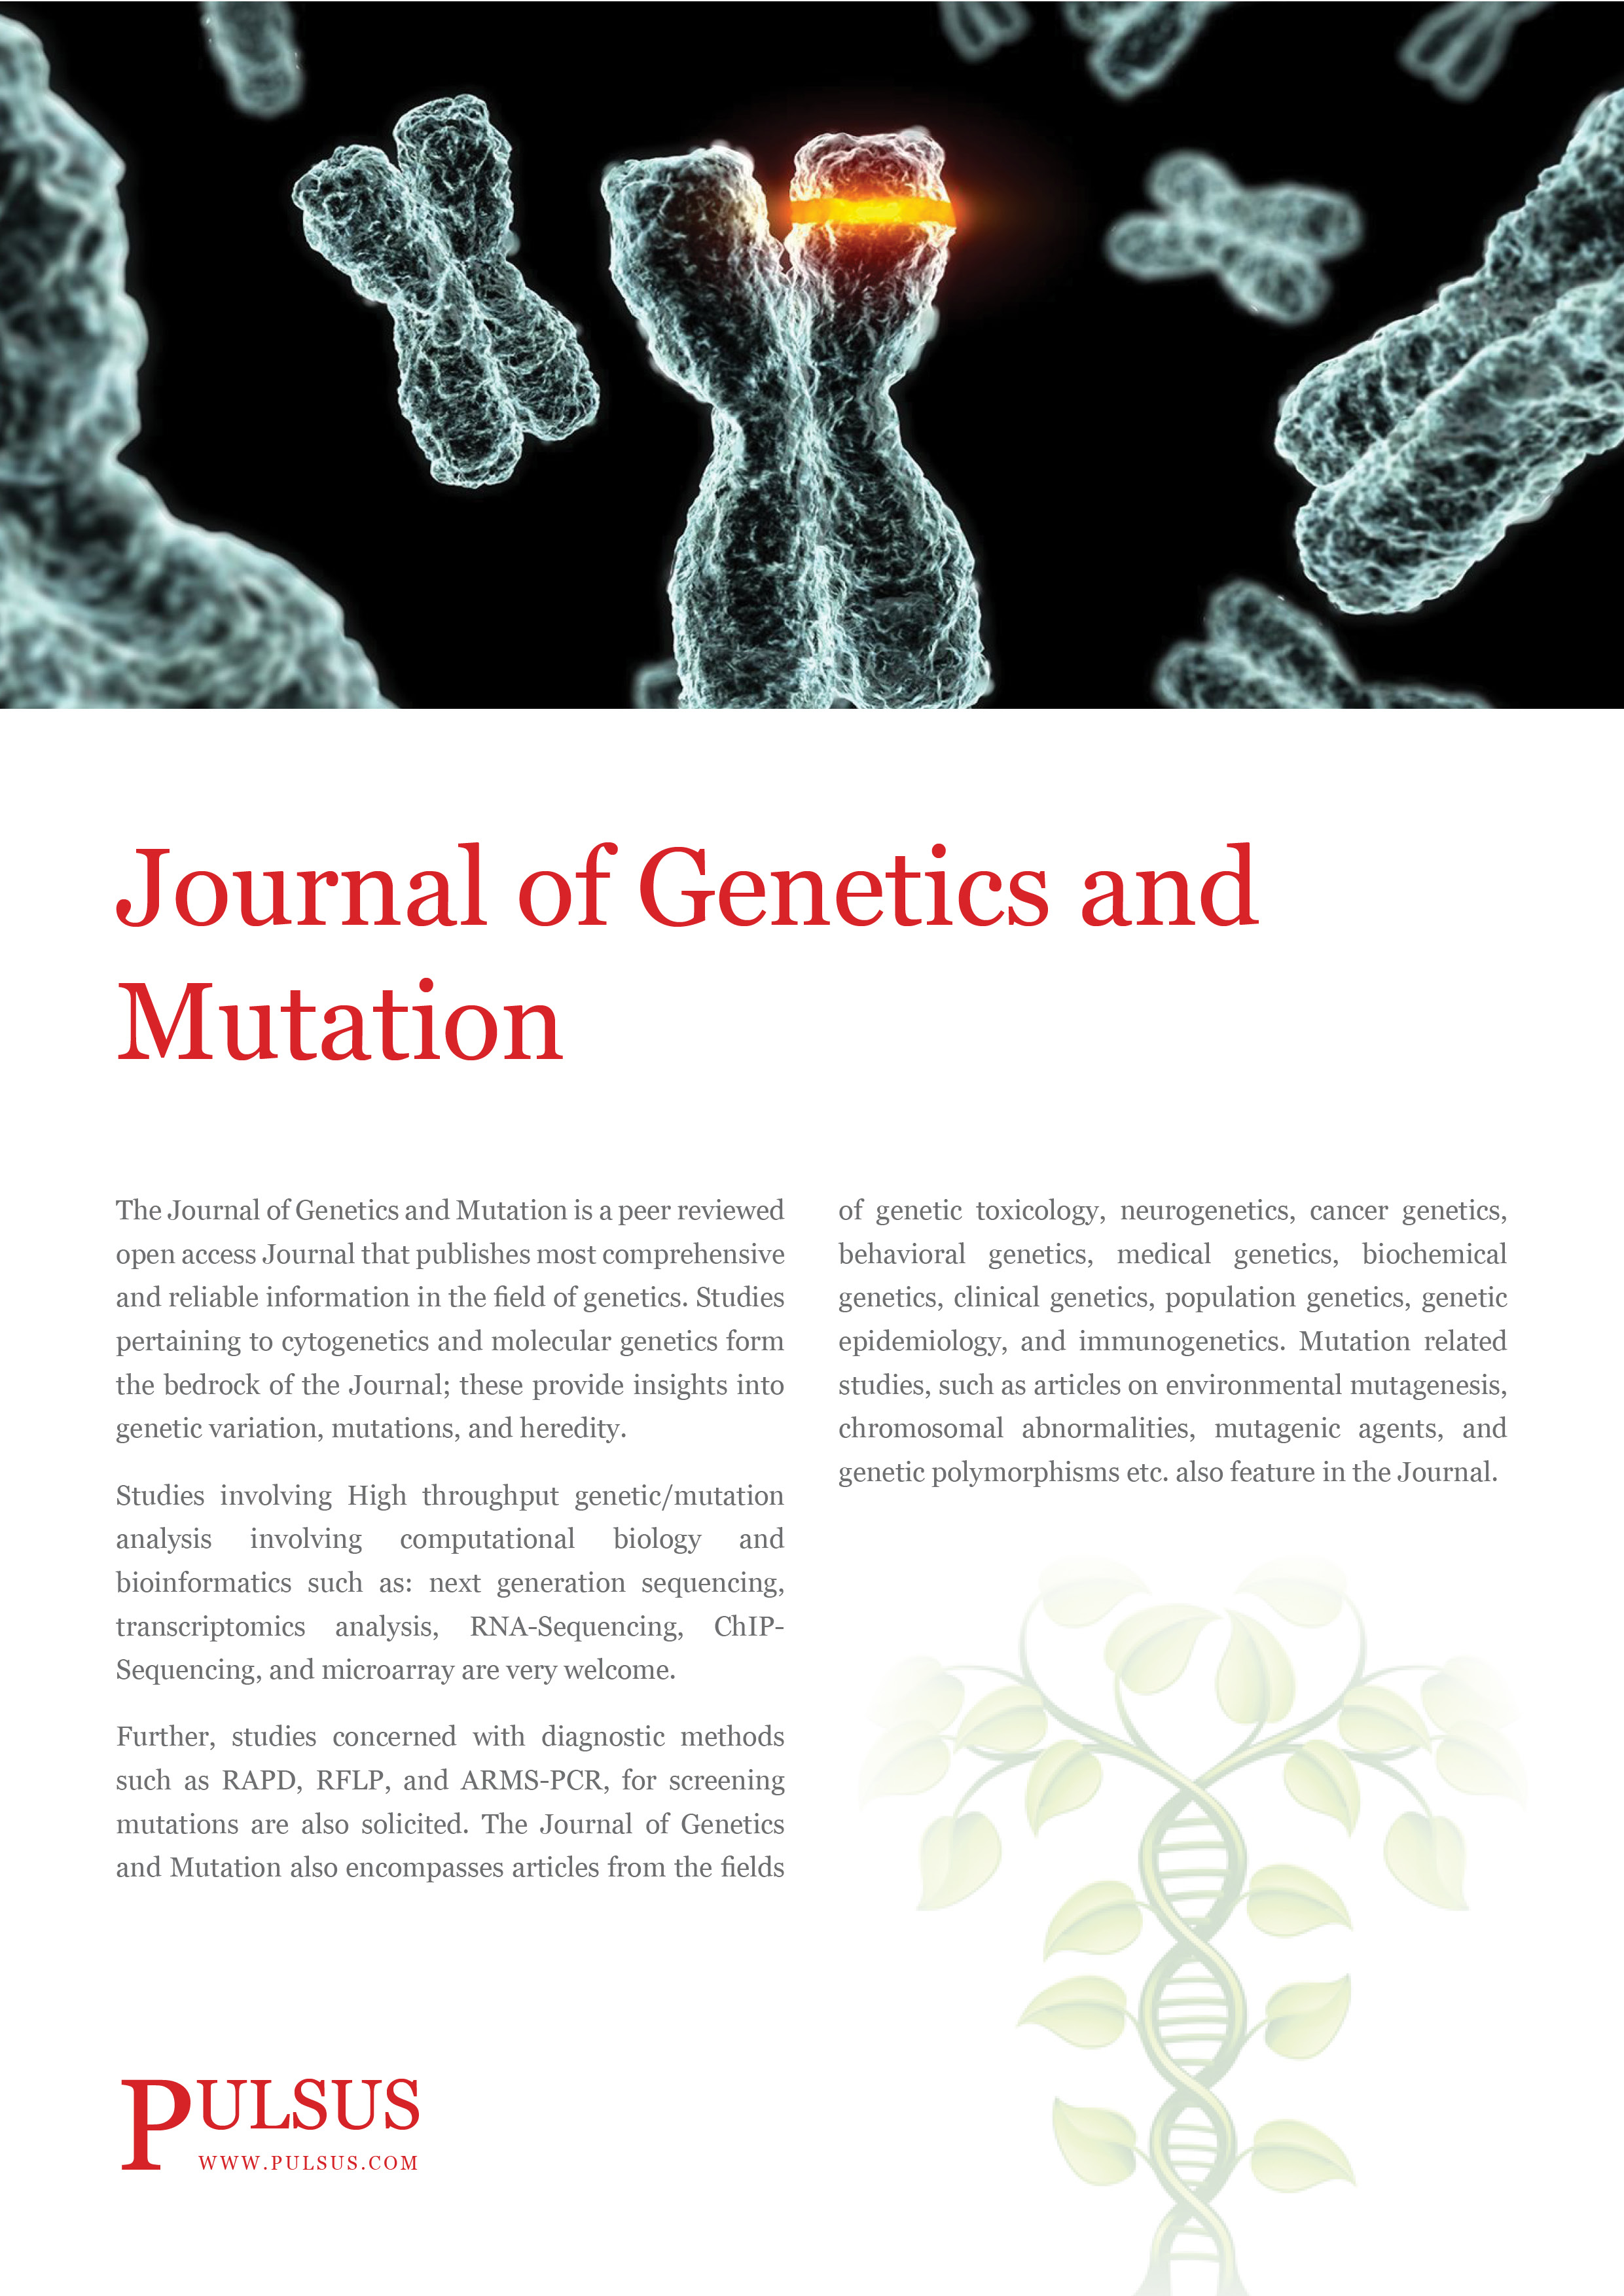 Journal de génétique et de mutation